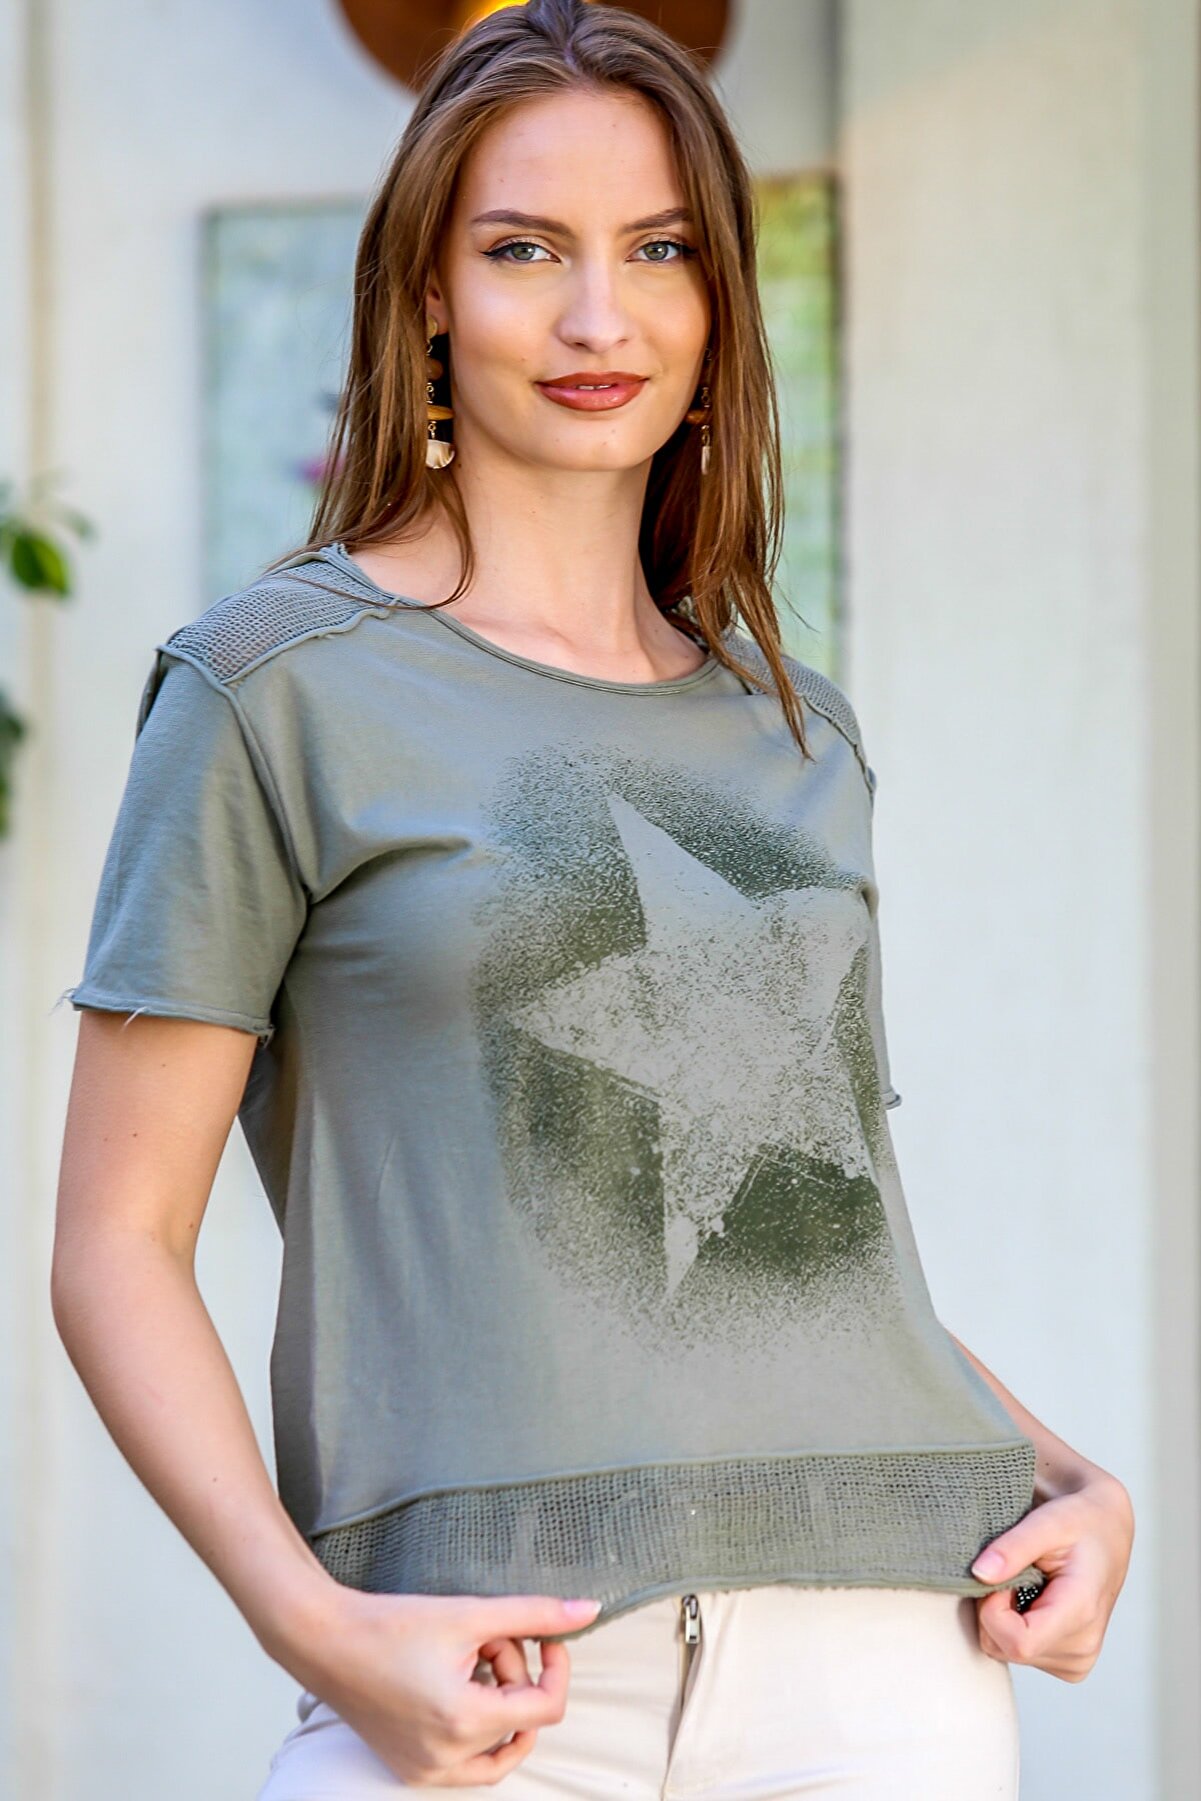 Chiccy Kadın Haki Sıfır Yaka Omzu Ve Etek Ucu File Detaylı Yıldız Baskılı Yıkamalı T-Shirt M10010300TS98209